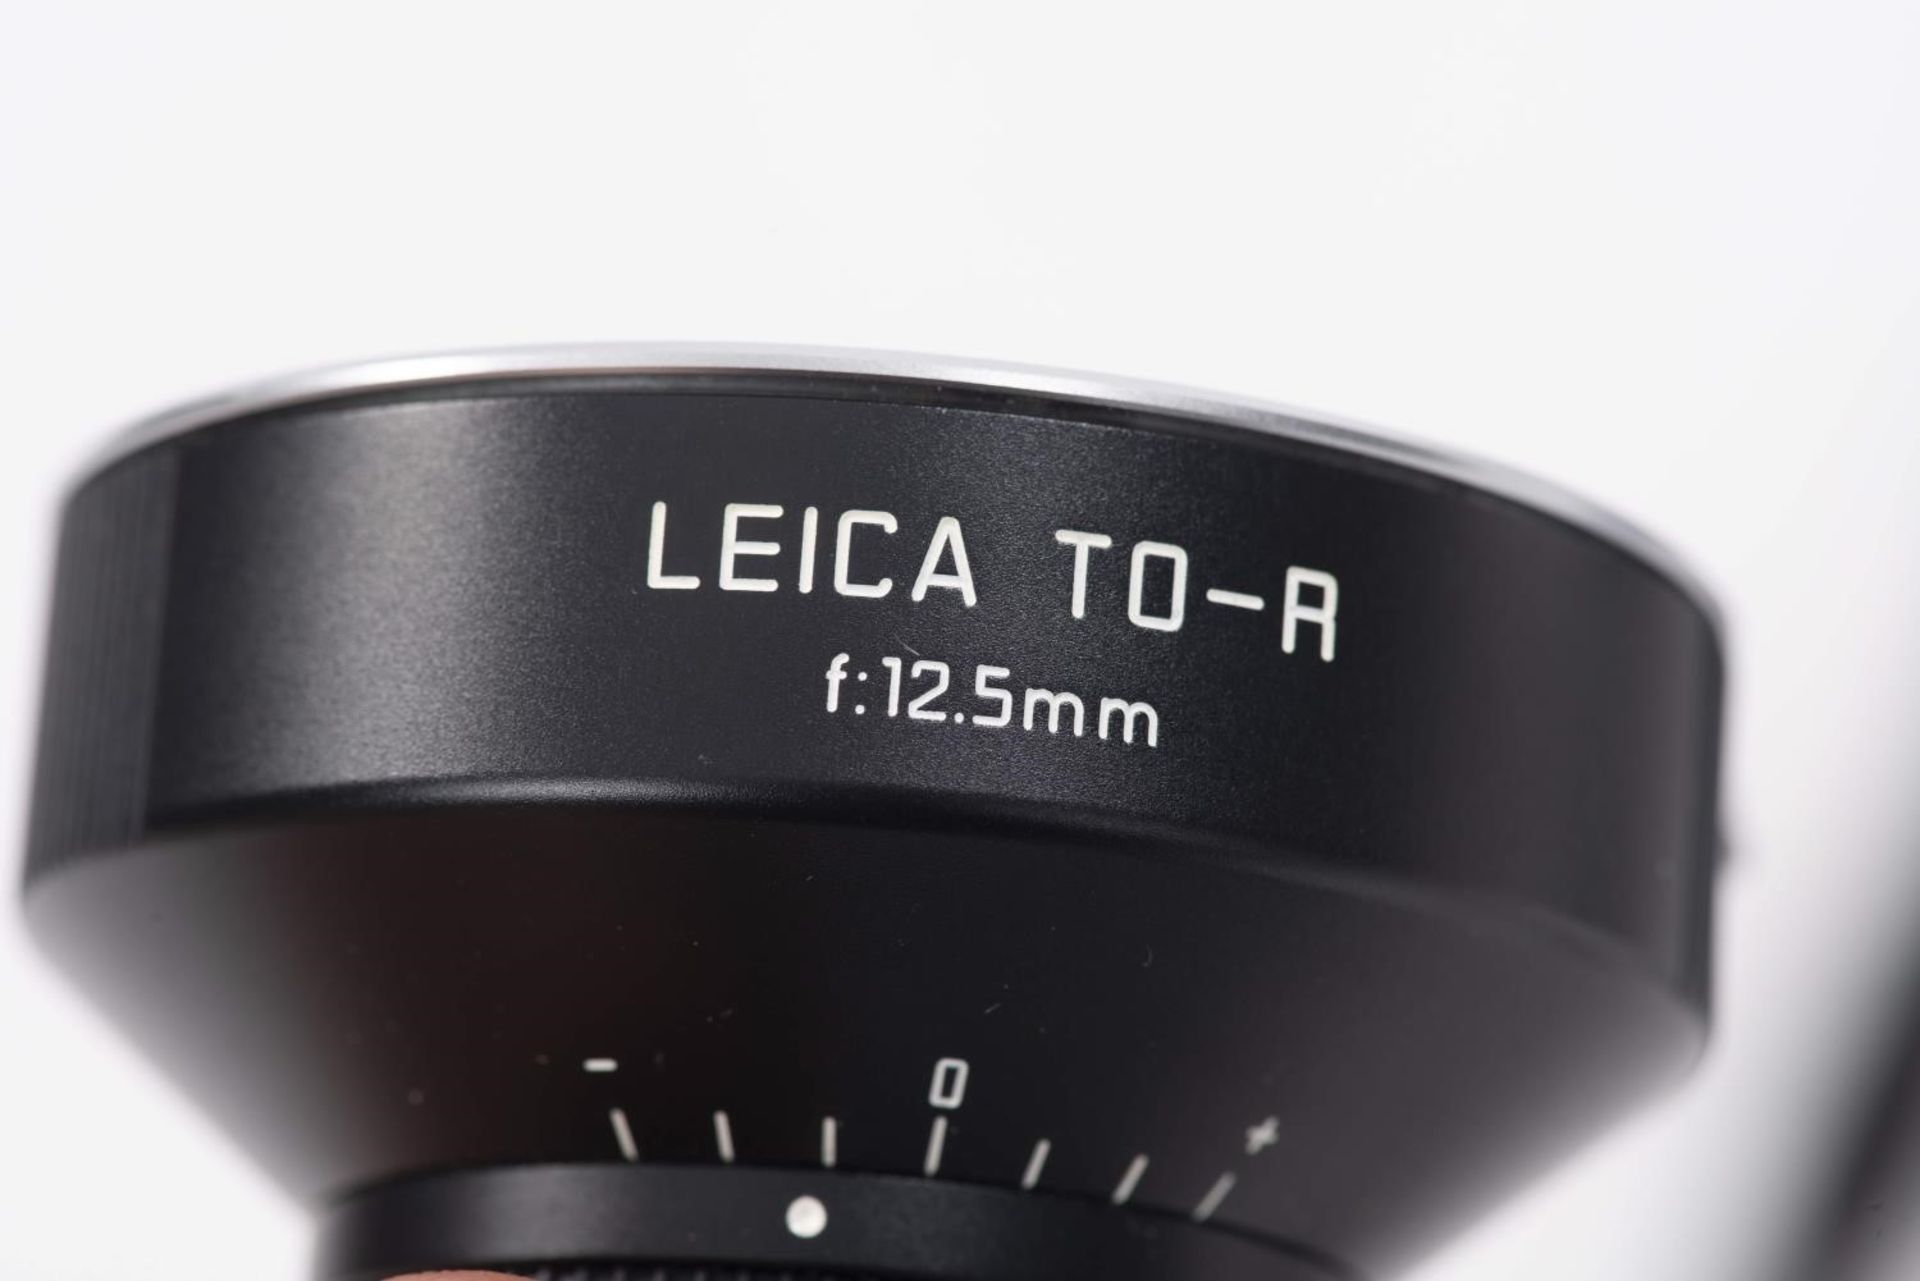 1 appareil Leica R4 avec 1 50mm, 70-210mm, 24mm, 1 bague de rallonge, 1 viseur pour [...] - Bild 6 aus 6